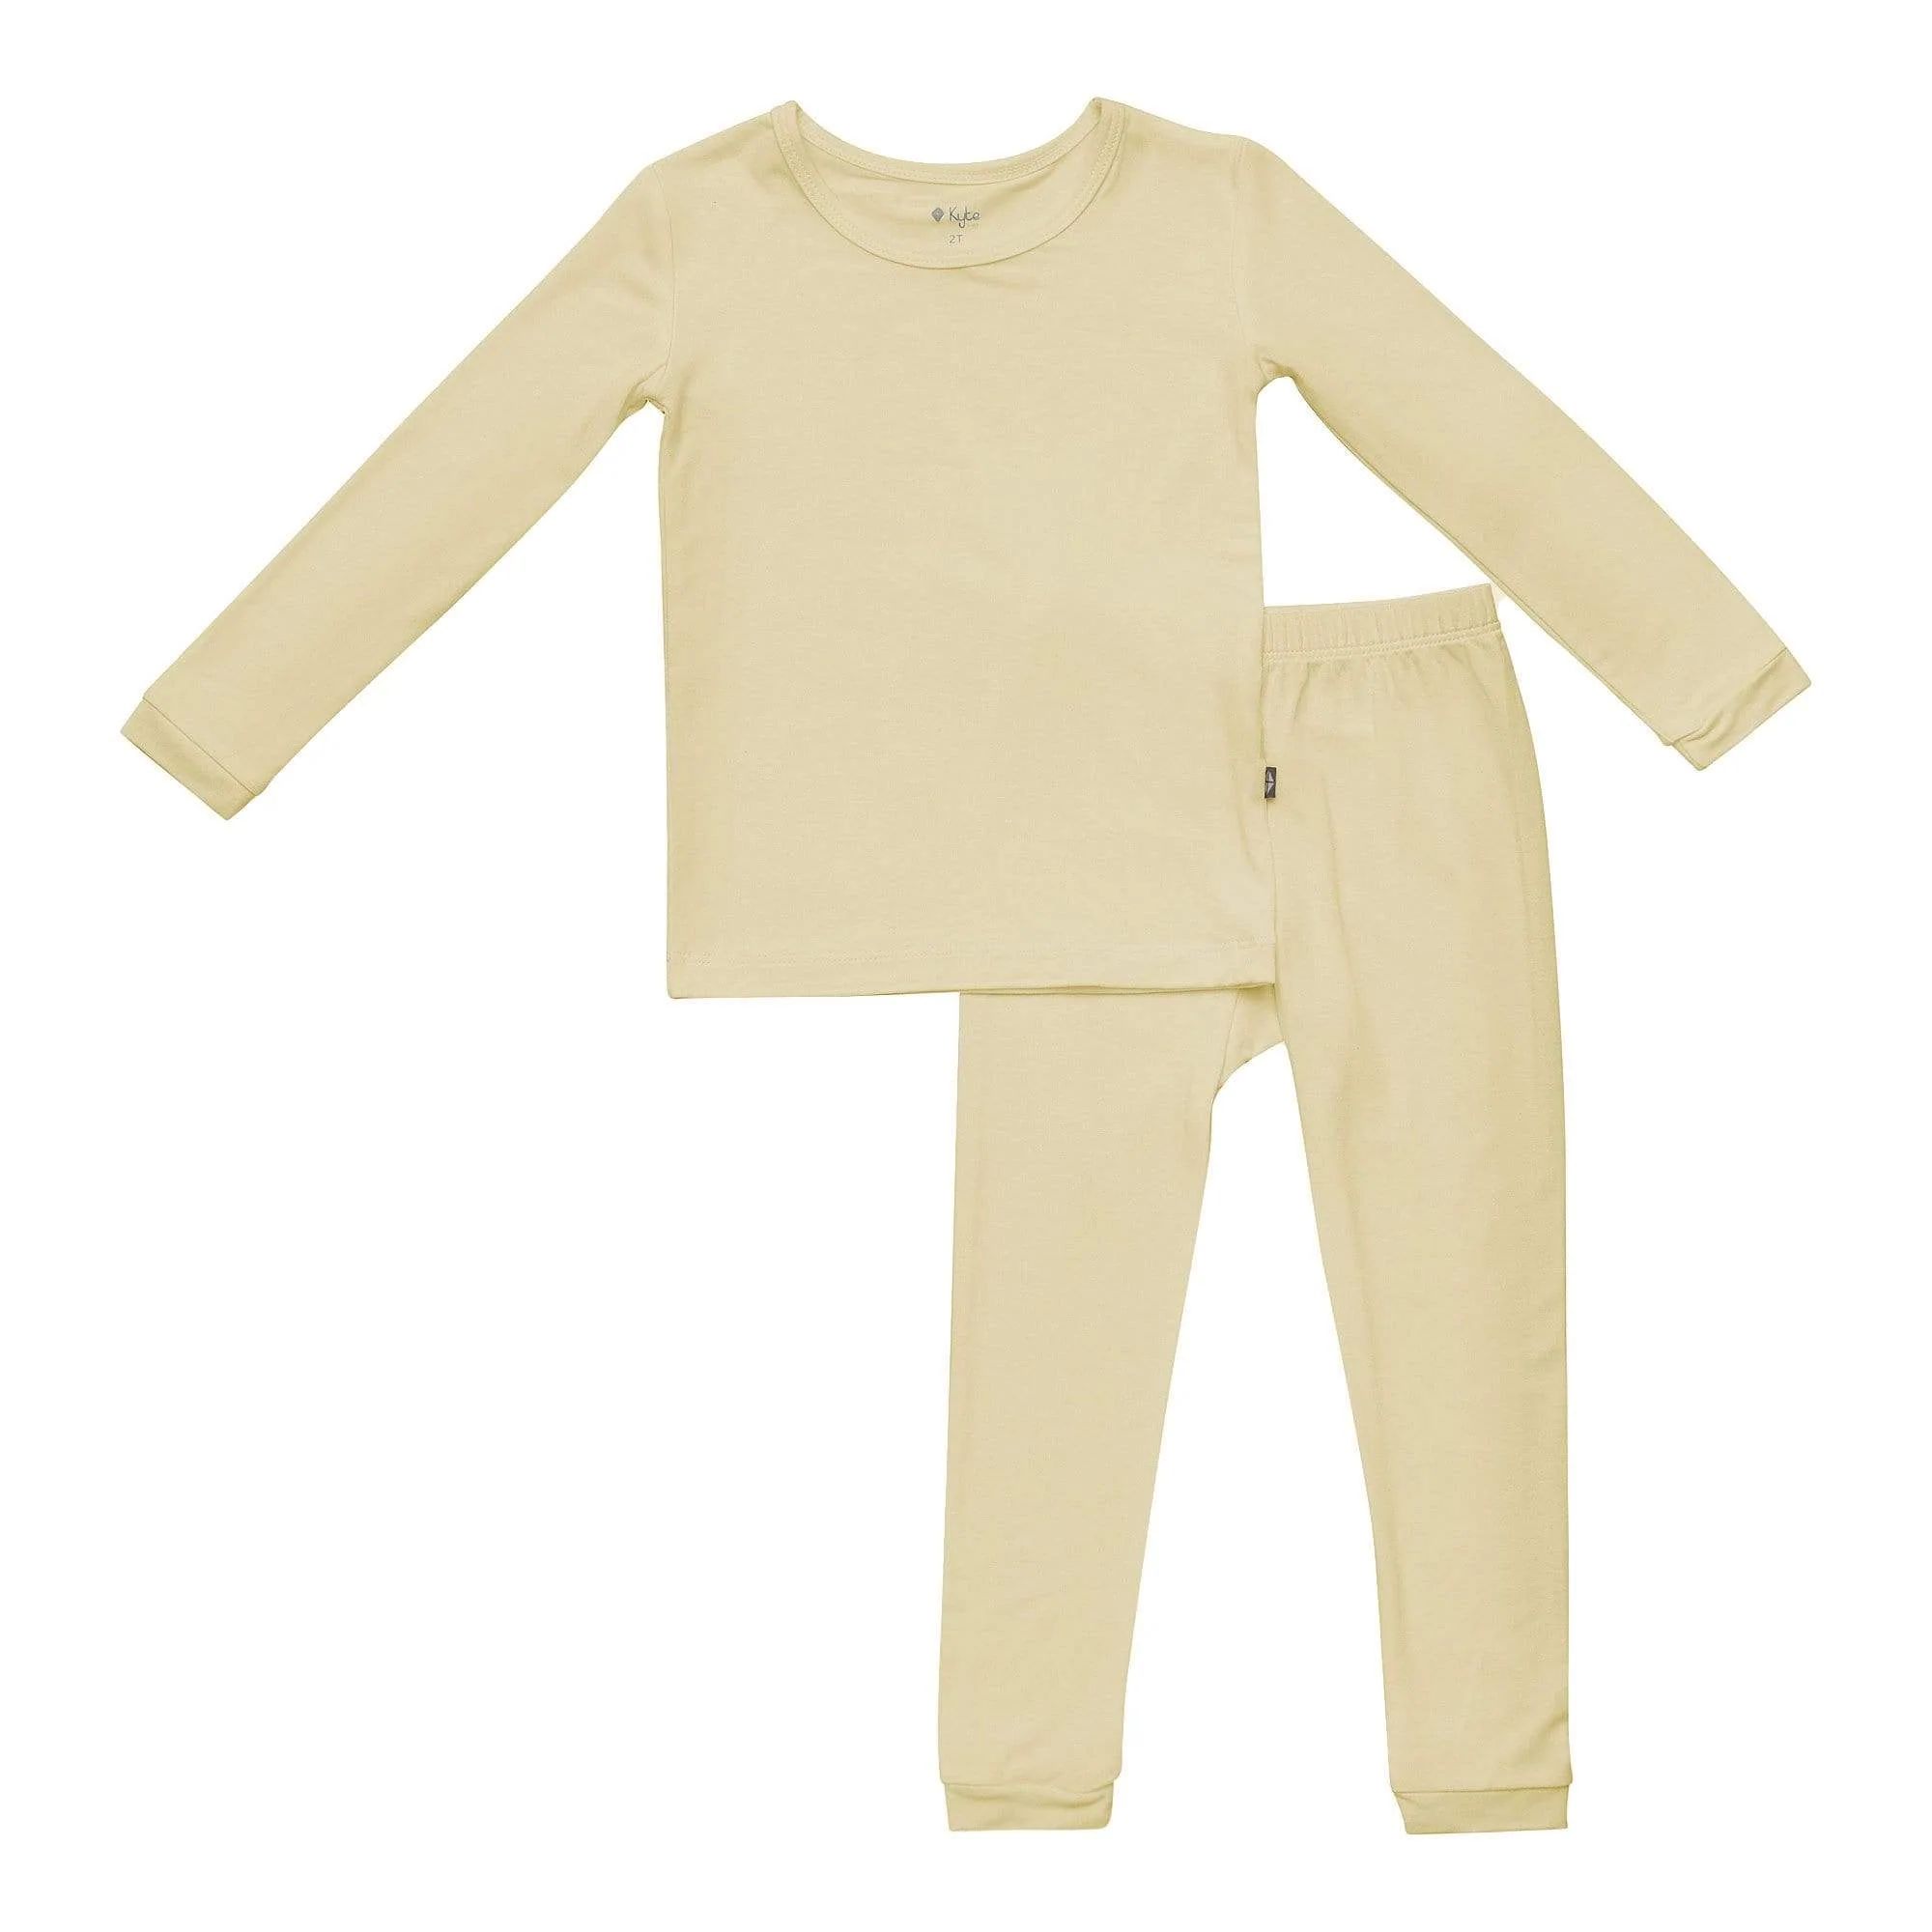 Toddler Pajama Set in Wheat | Kyte BABY